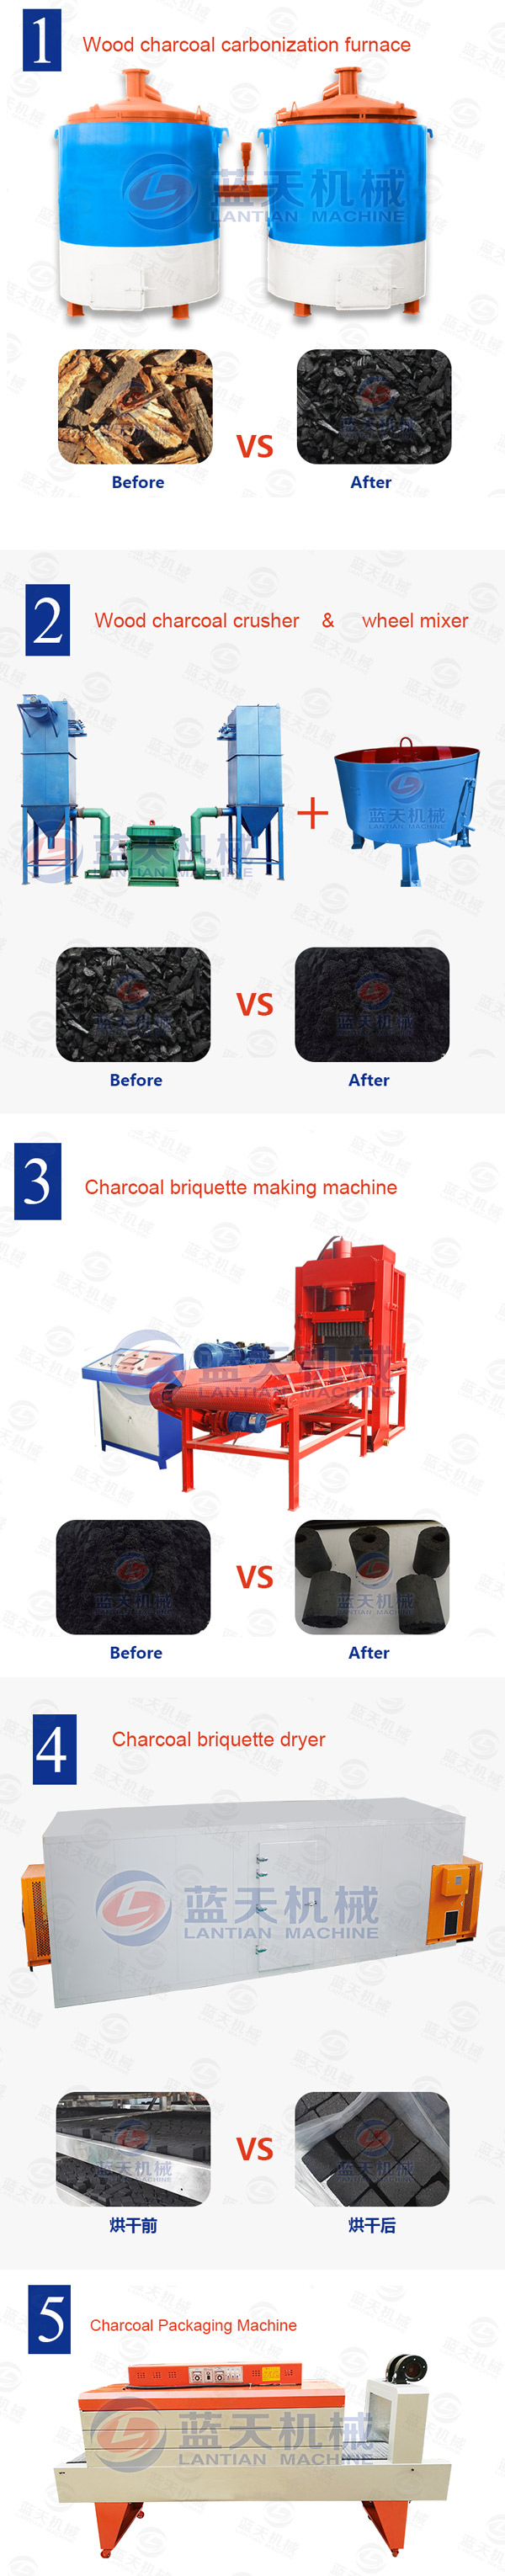 charcoal briquettes machine